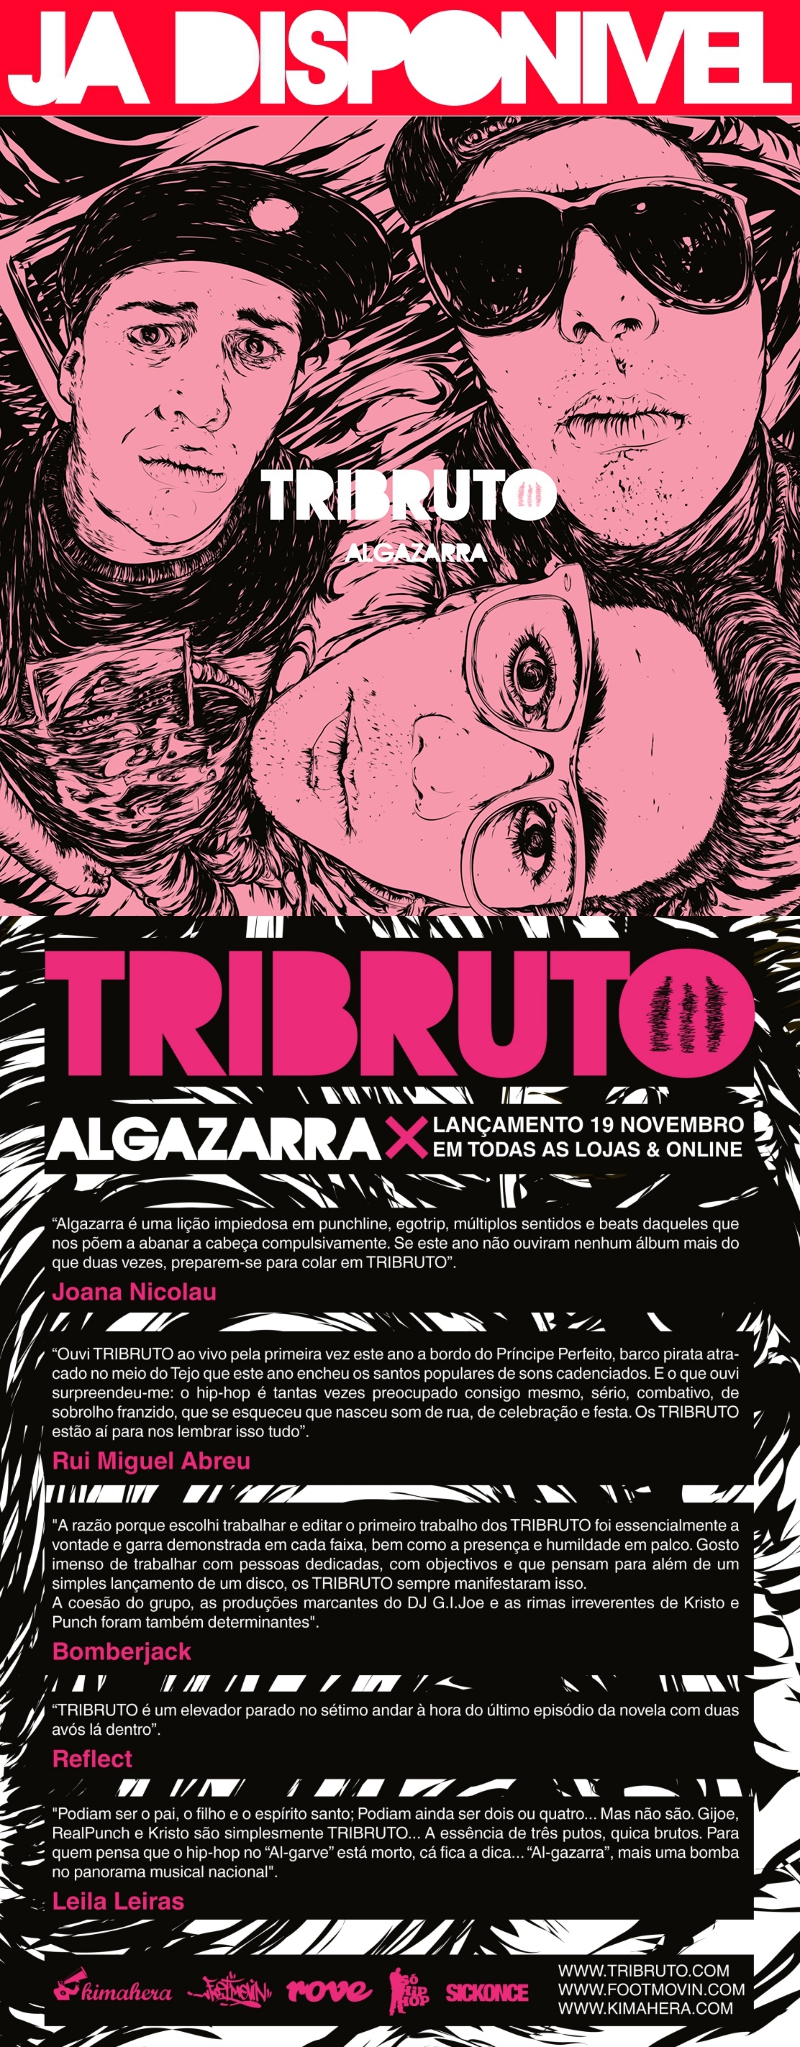 Tribruto - Algazarra já disponível!